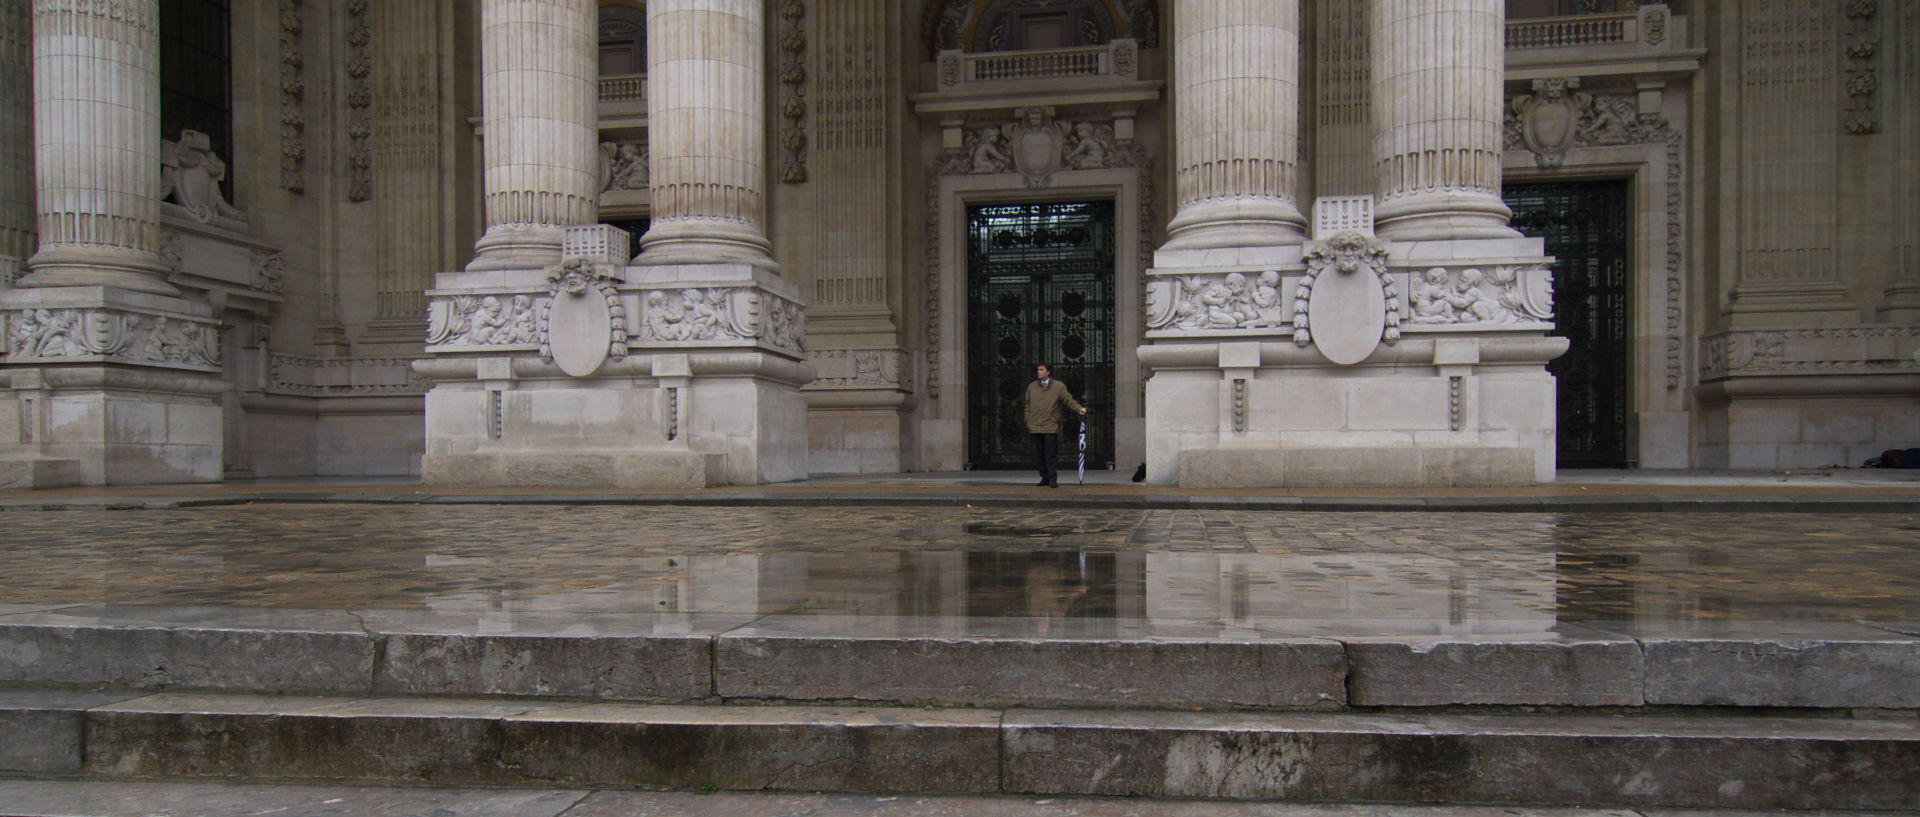 Mercredi 5 novembre 2008 (4), le Grand Palais, à Paris.